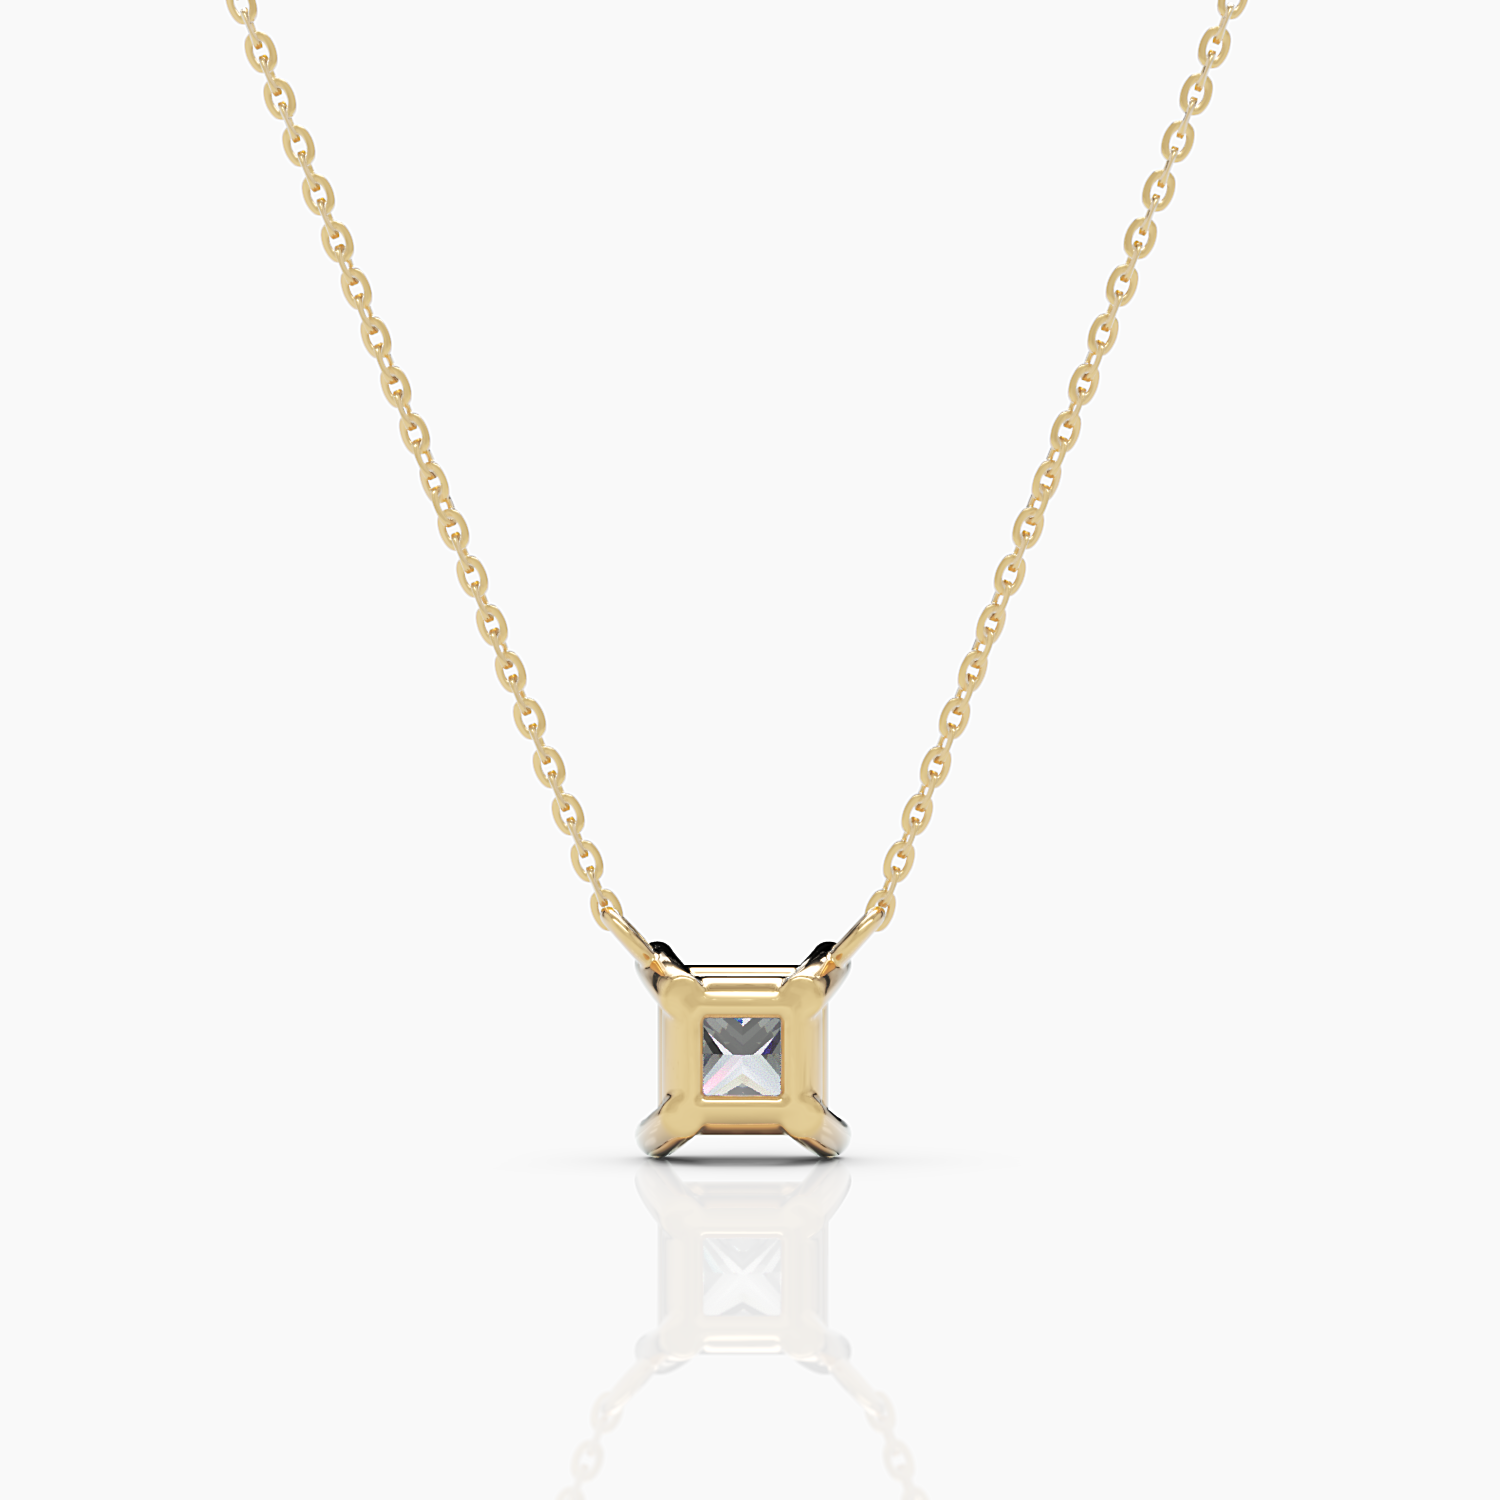 Princess Cut Diamond Solitaire Necklace